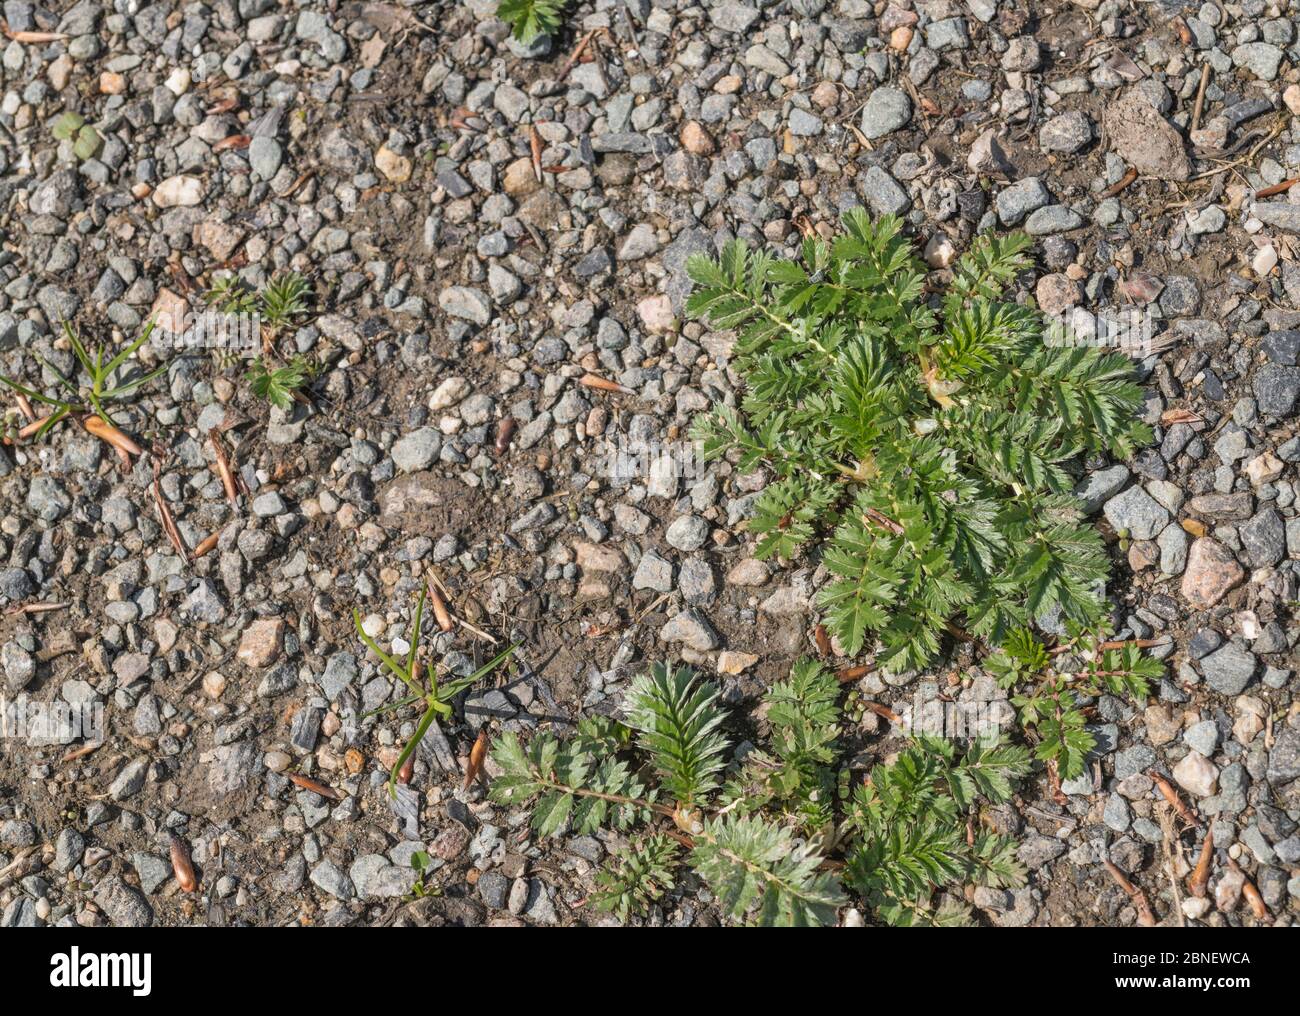 Blattrosette des gewöhnlichen britischen landwirtschaftlichen Unkrauts Silverlweed / Potentilla anserina bei Sonnenschein. Wurde in der Vergangenheit als adstringierend in pflanzlichen Heilmitteln verwendet Stockfoto